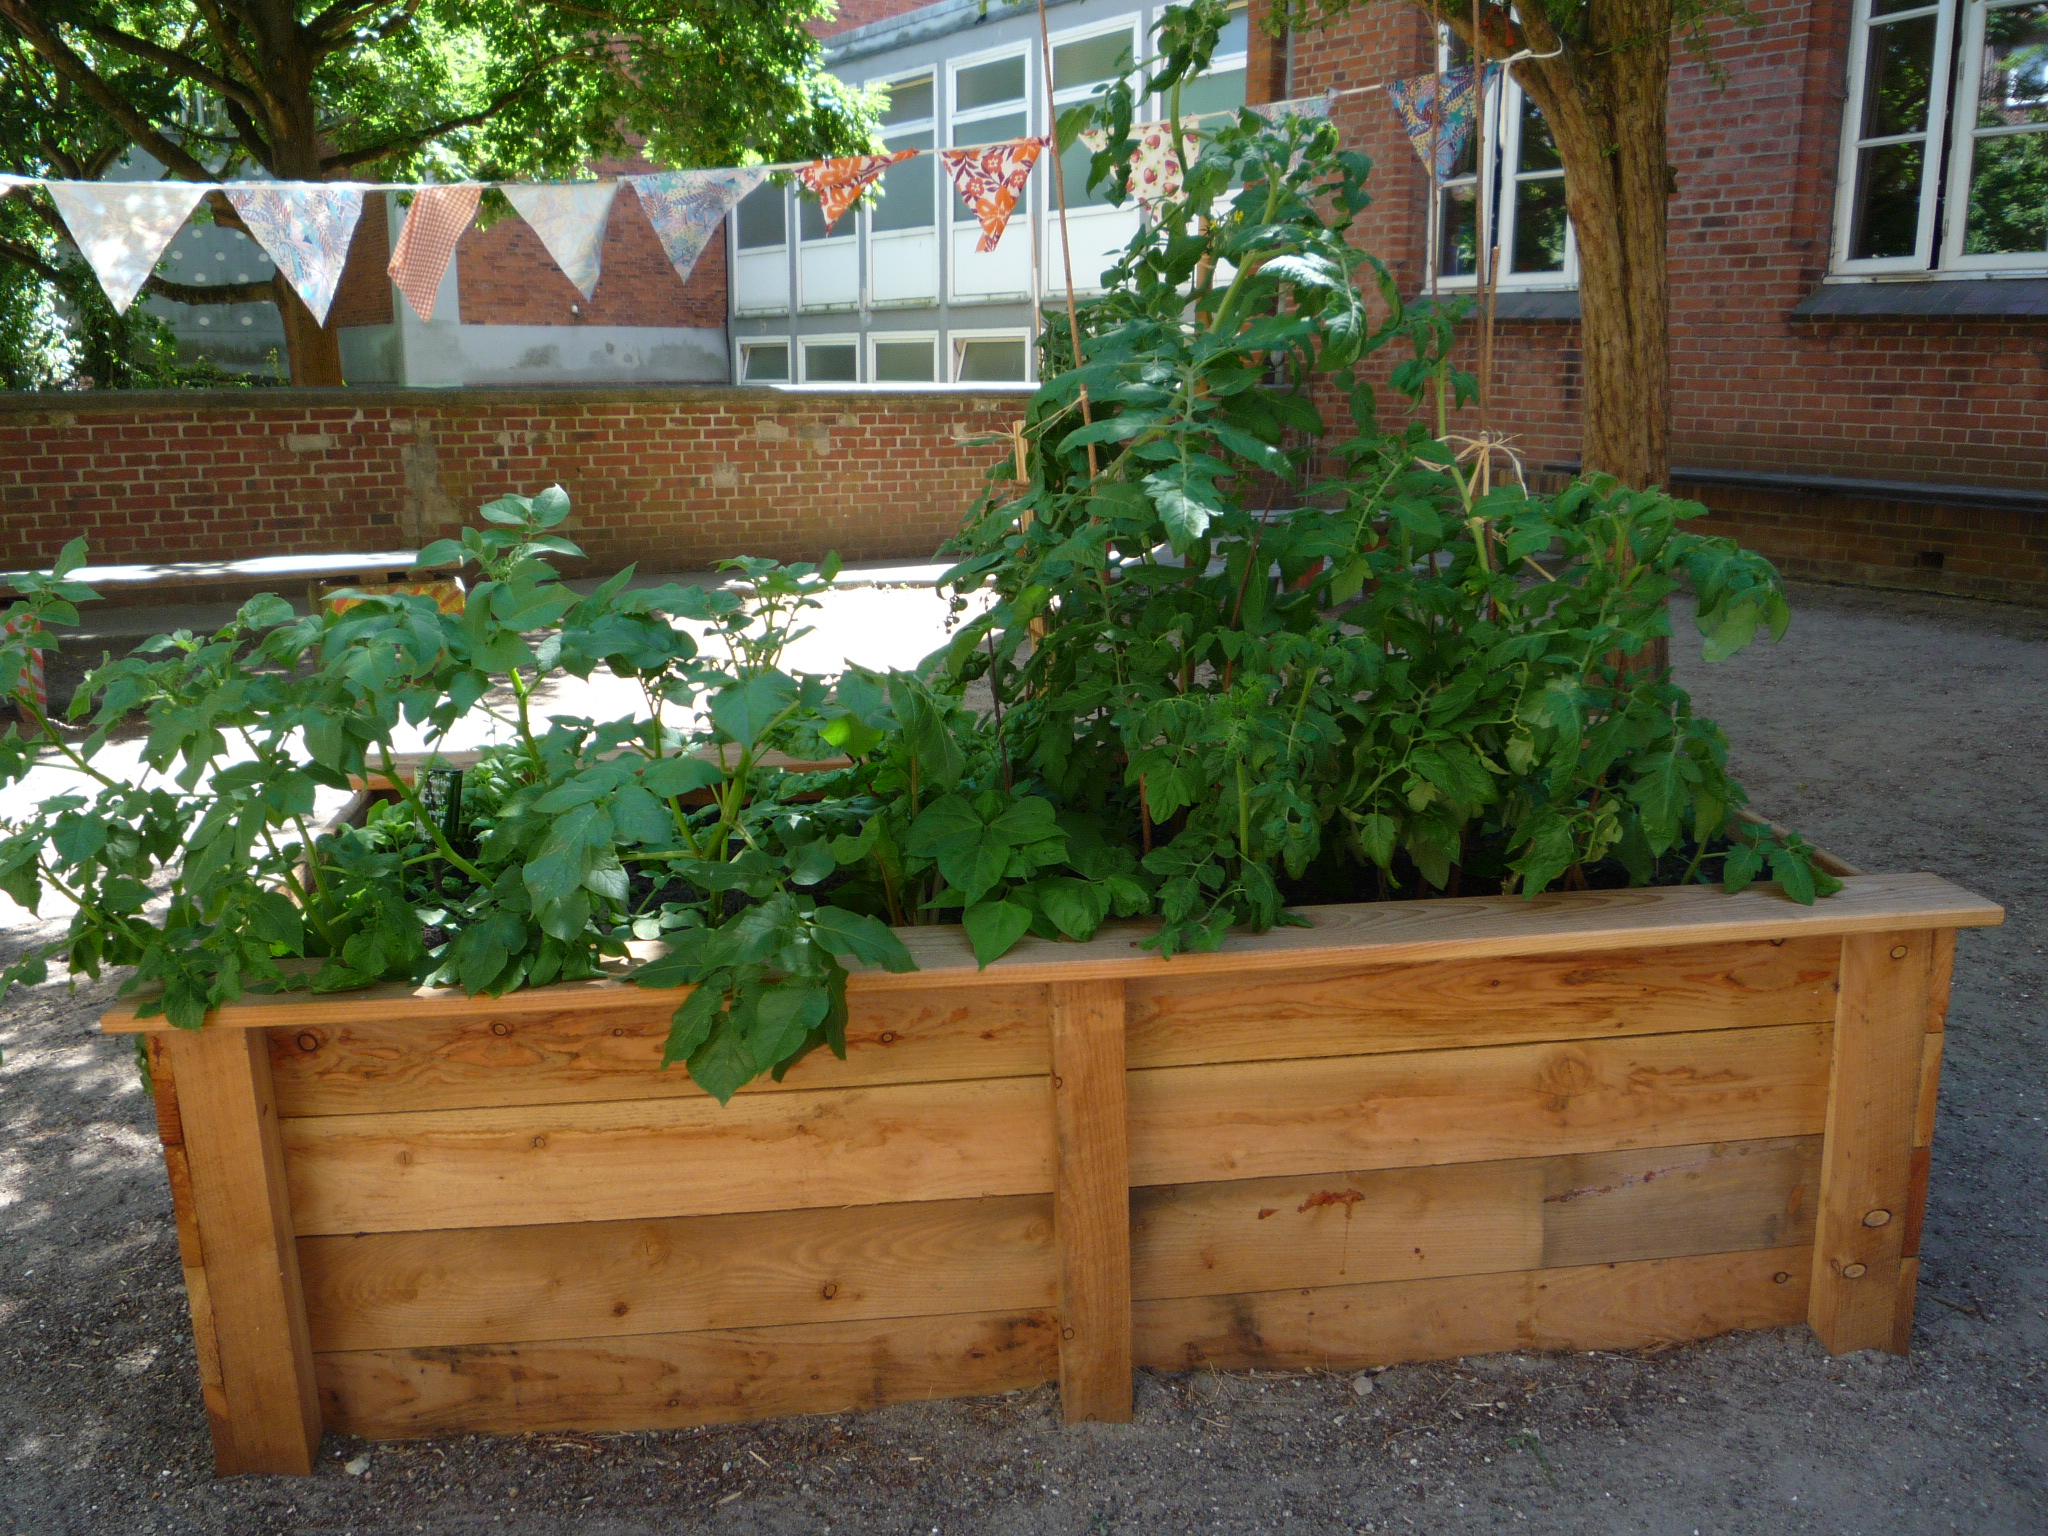 Gemüse wächst auf dem Schulhof